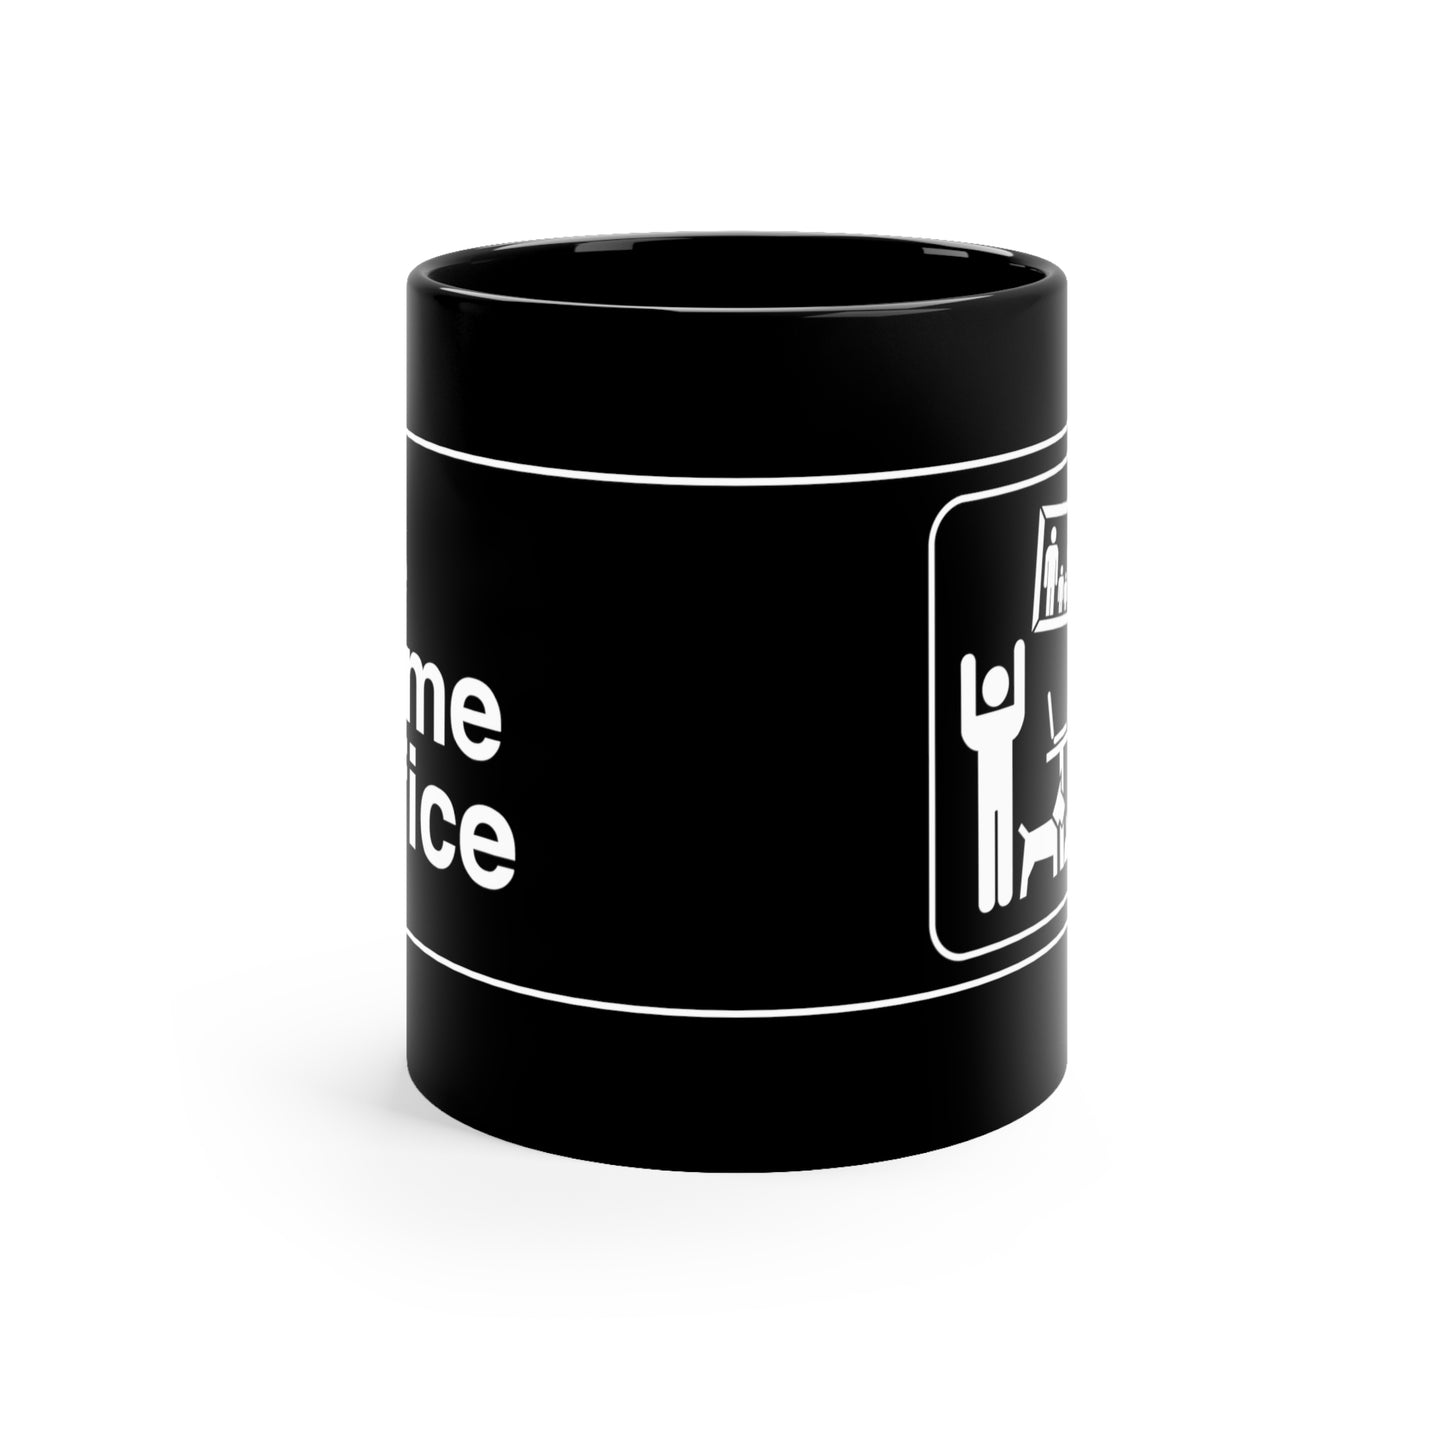 The Home Office ceramic mug